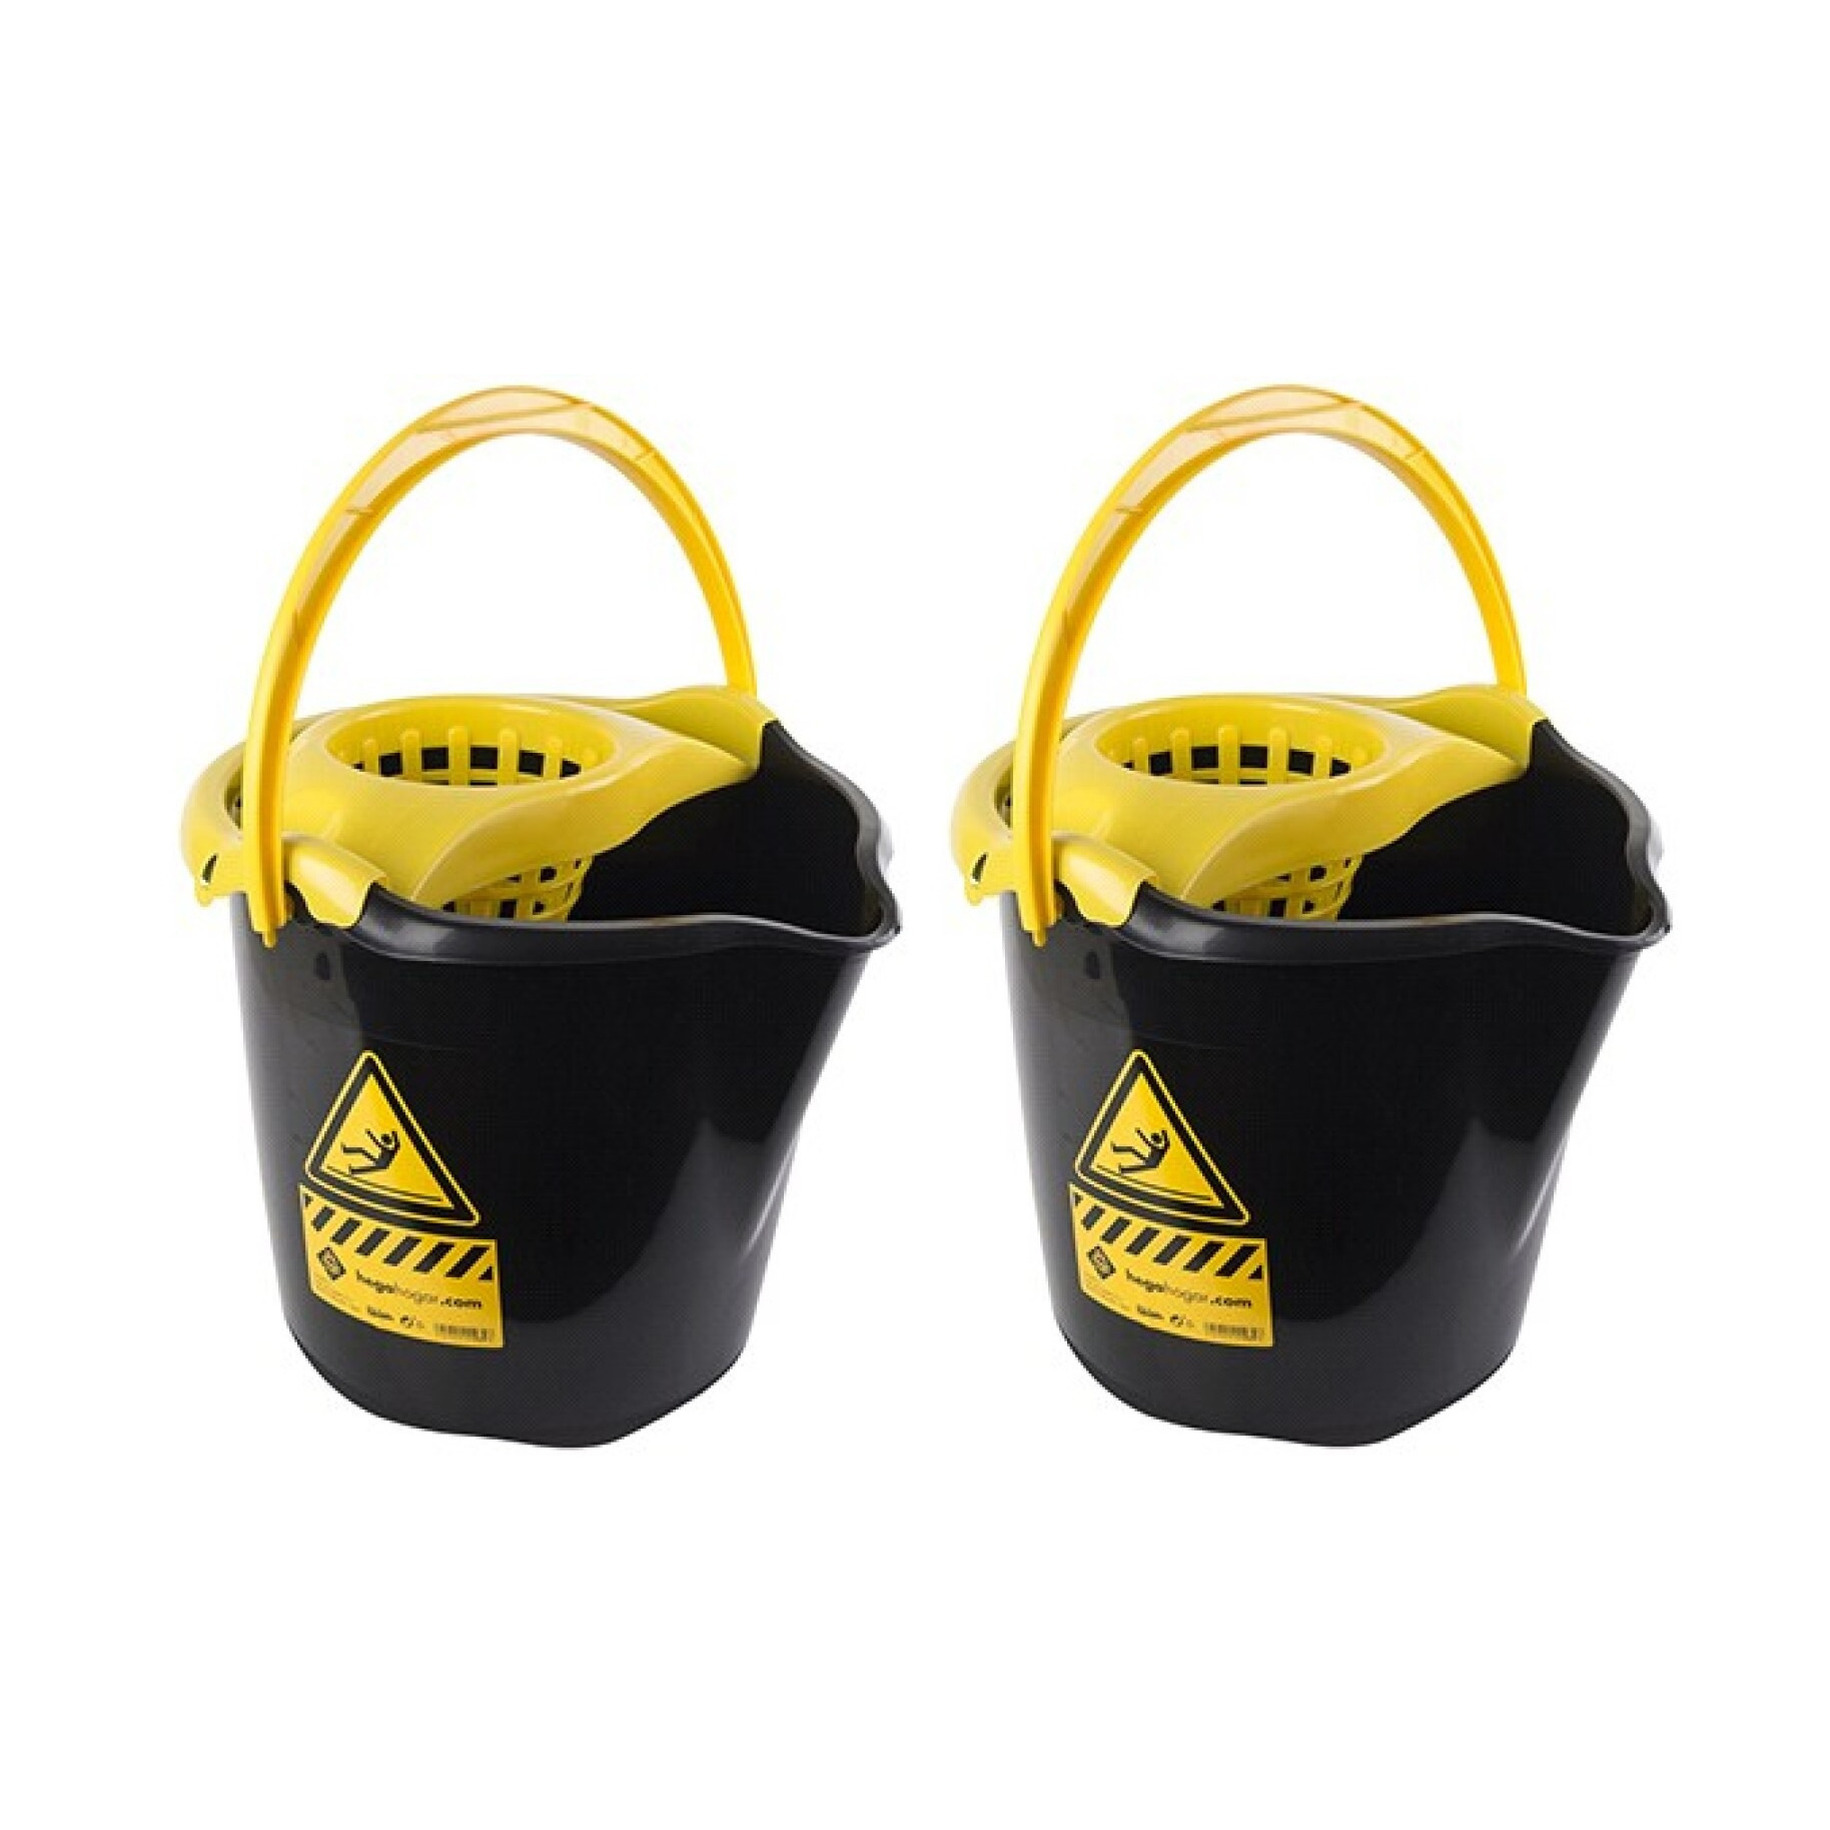 3x Huishoudemmers met dweil houder 13,5 liter zwart-geel caution 32 x 30 cm